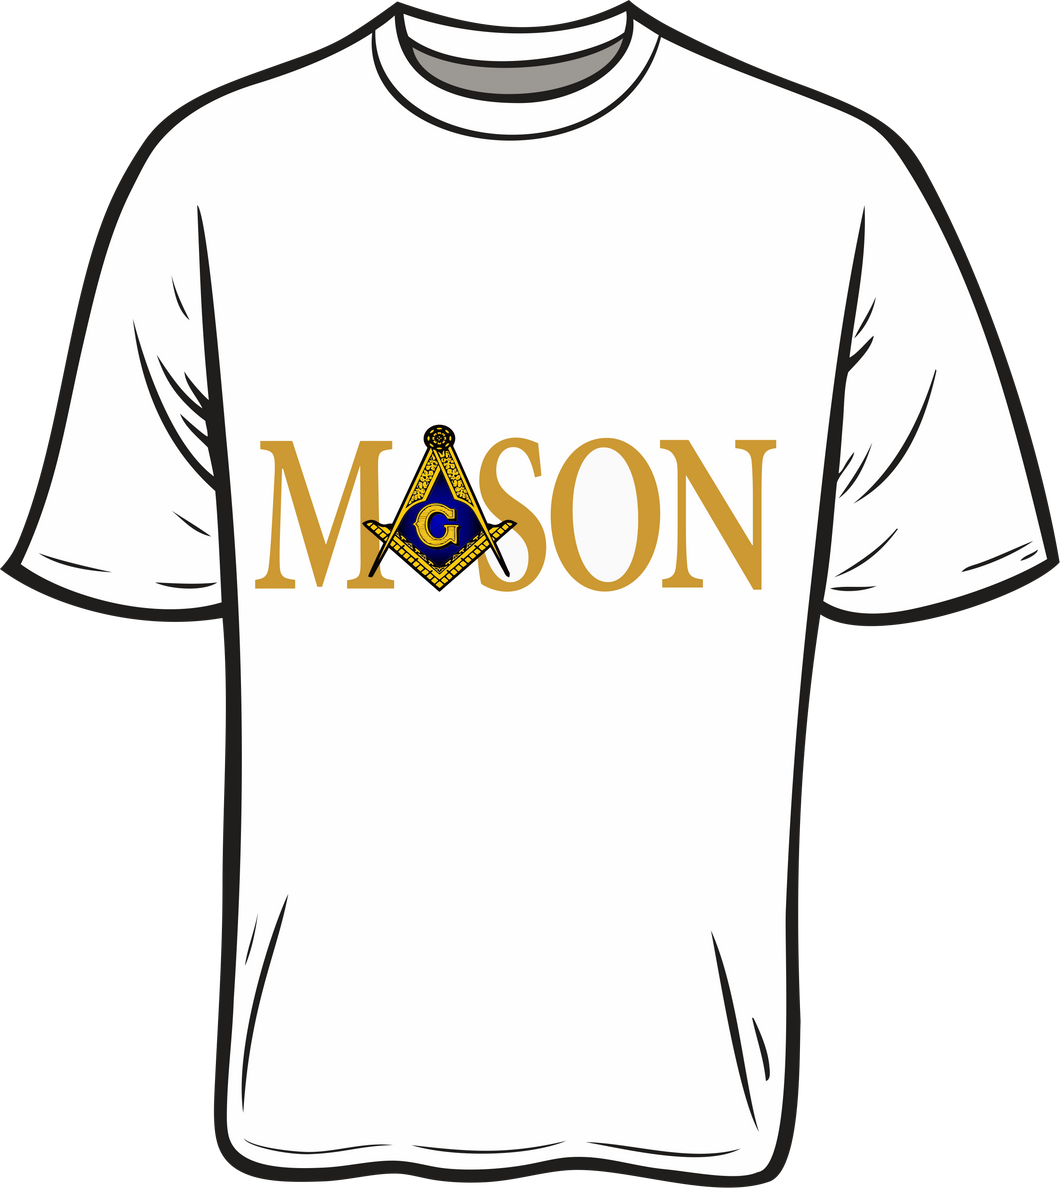 Mason Horizontal shirt